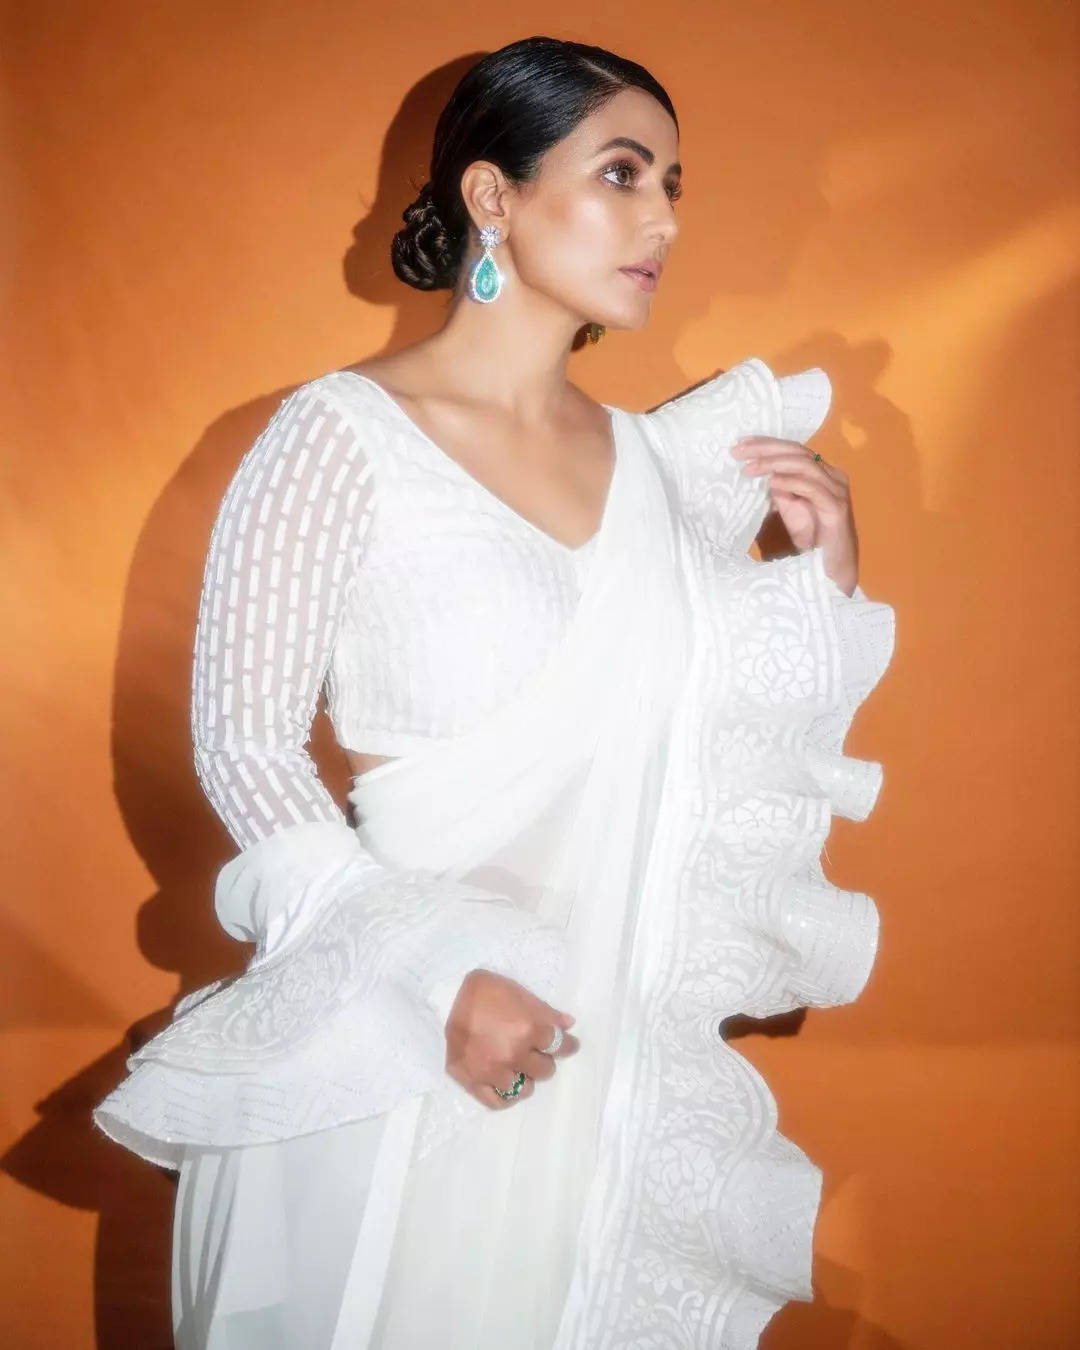 व्हाइट ड्रेस में अप्सरा सी खूबसूरत लग रही हिना खान, फैंस एक टक बस देखें जा रहे तस्वीर....